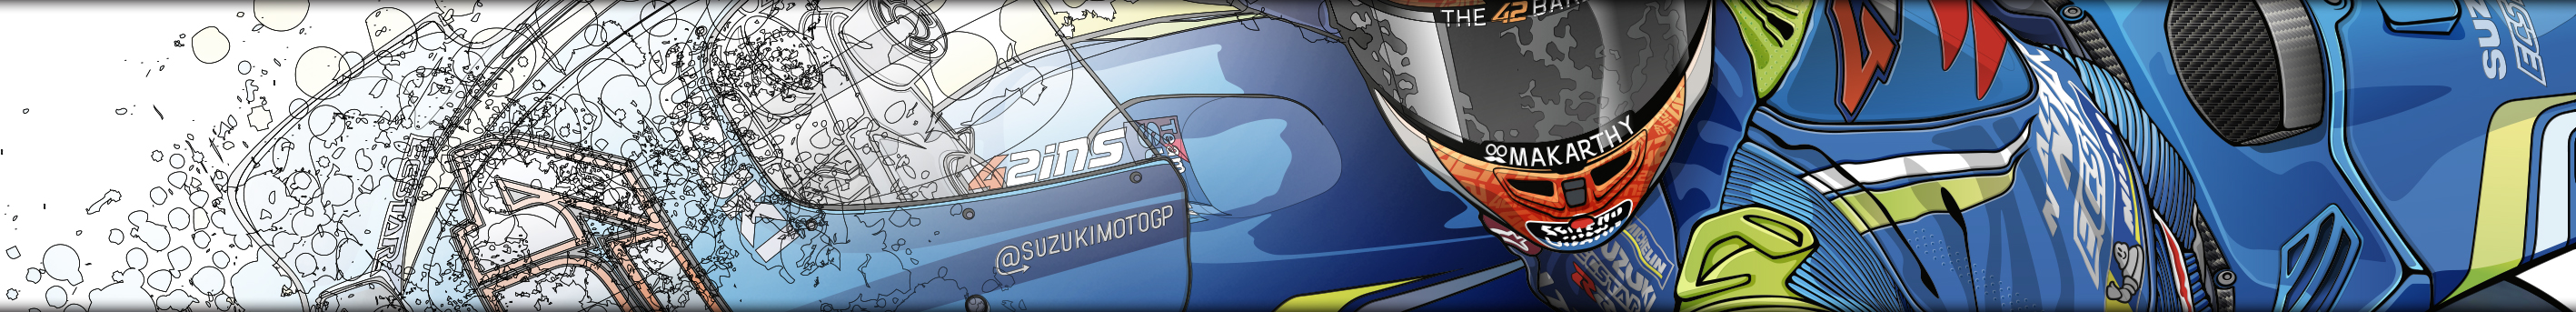 Visuel section 4 pour Moto GP drawings